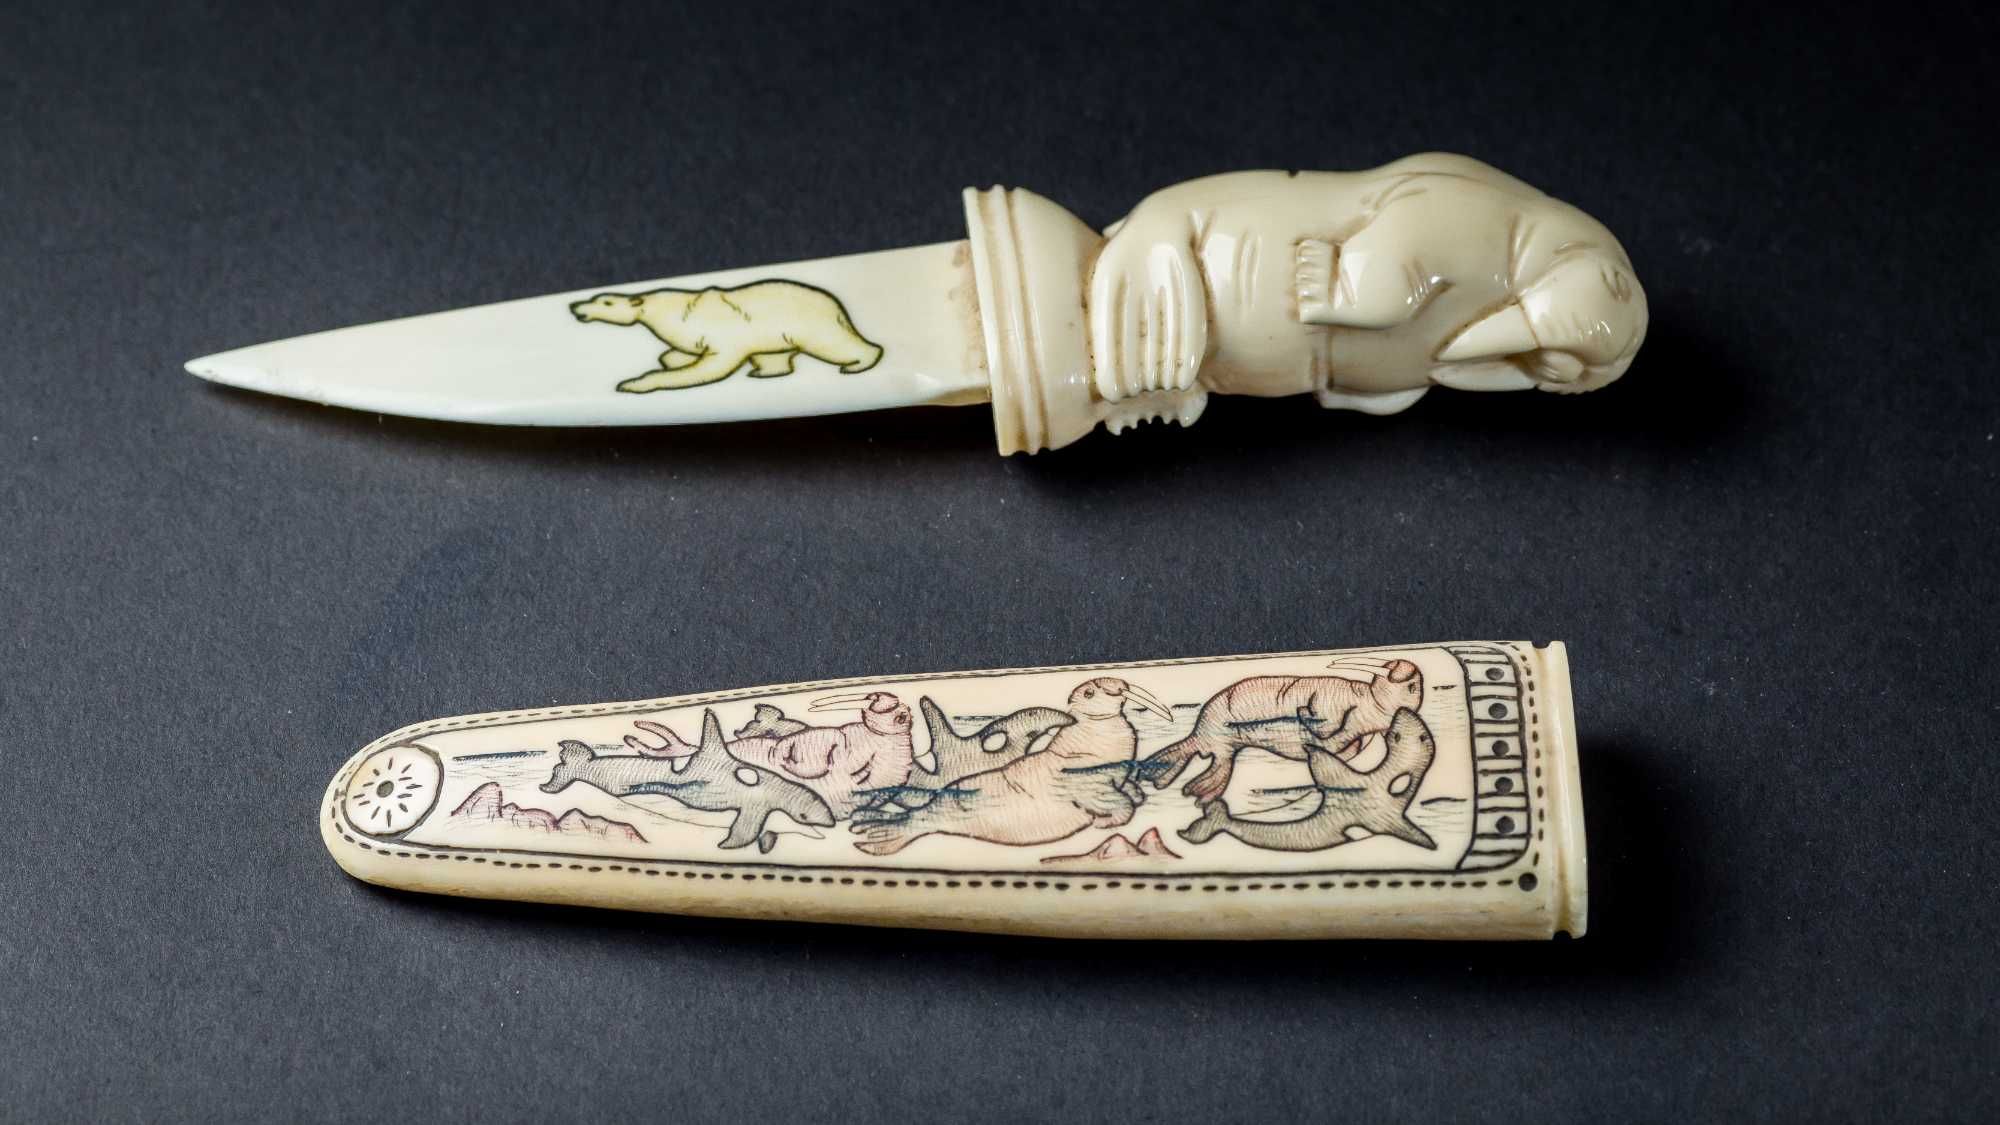 Уникальная коллекция из 7 ножей из благородной кости